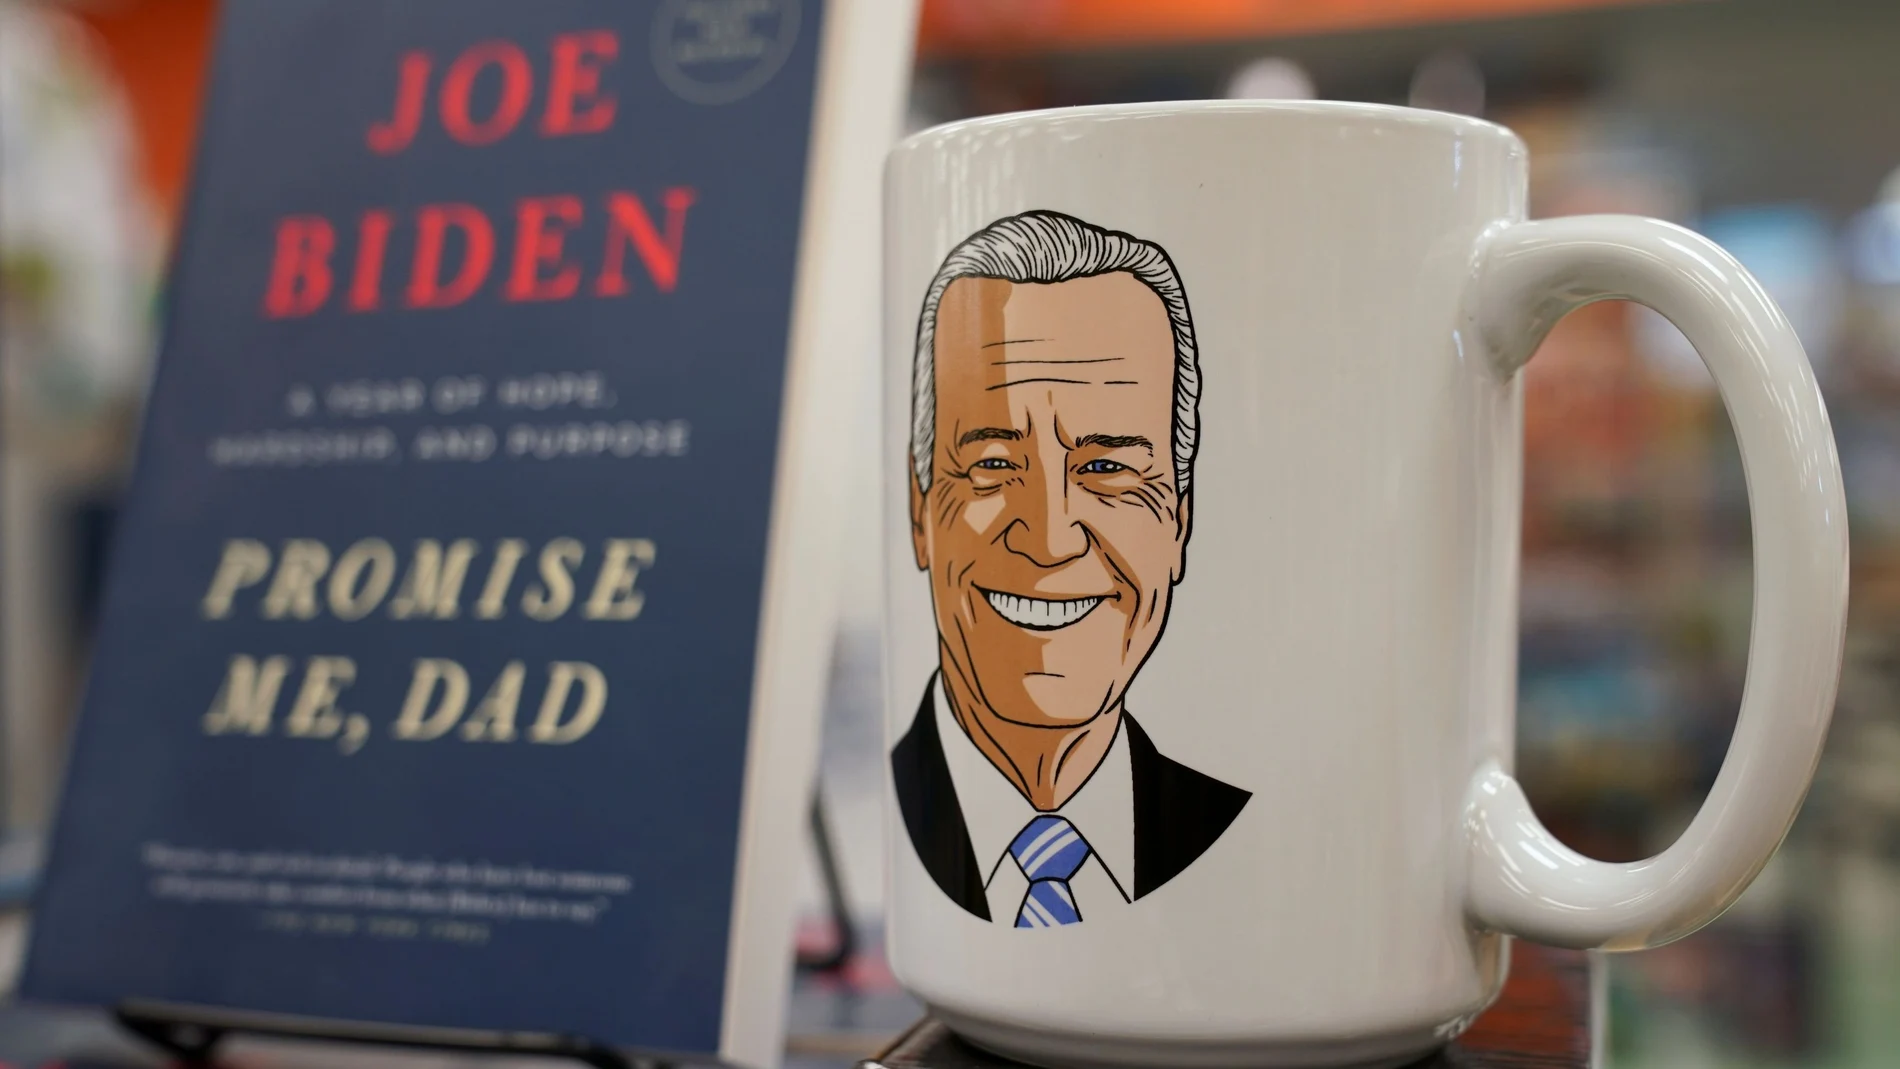 El libro de Biden junto a una taza con un dibujo del nuevo presidente de los EE UU